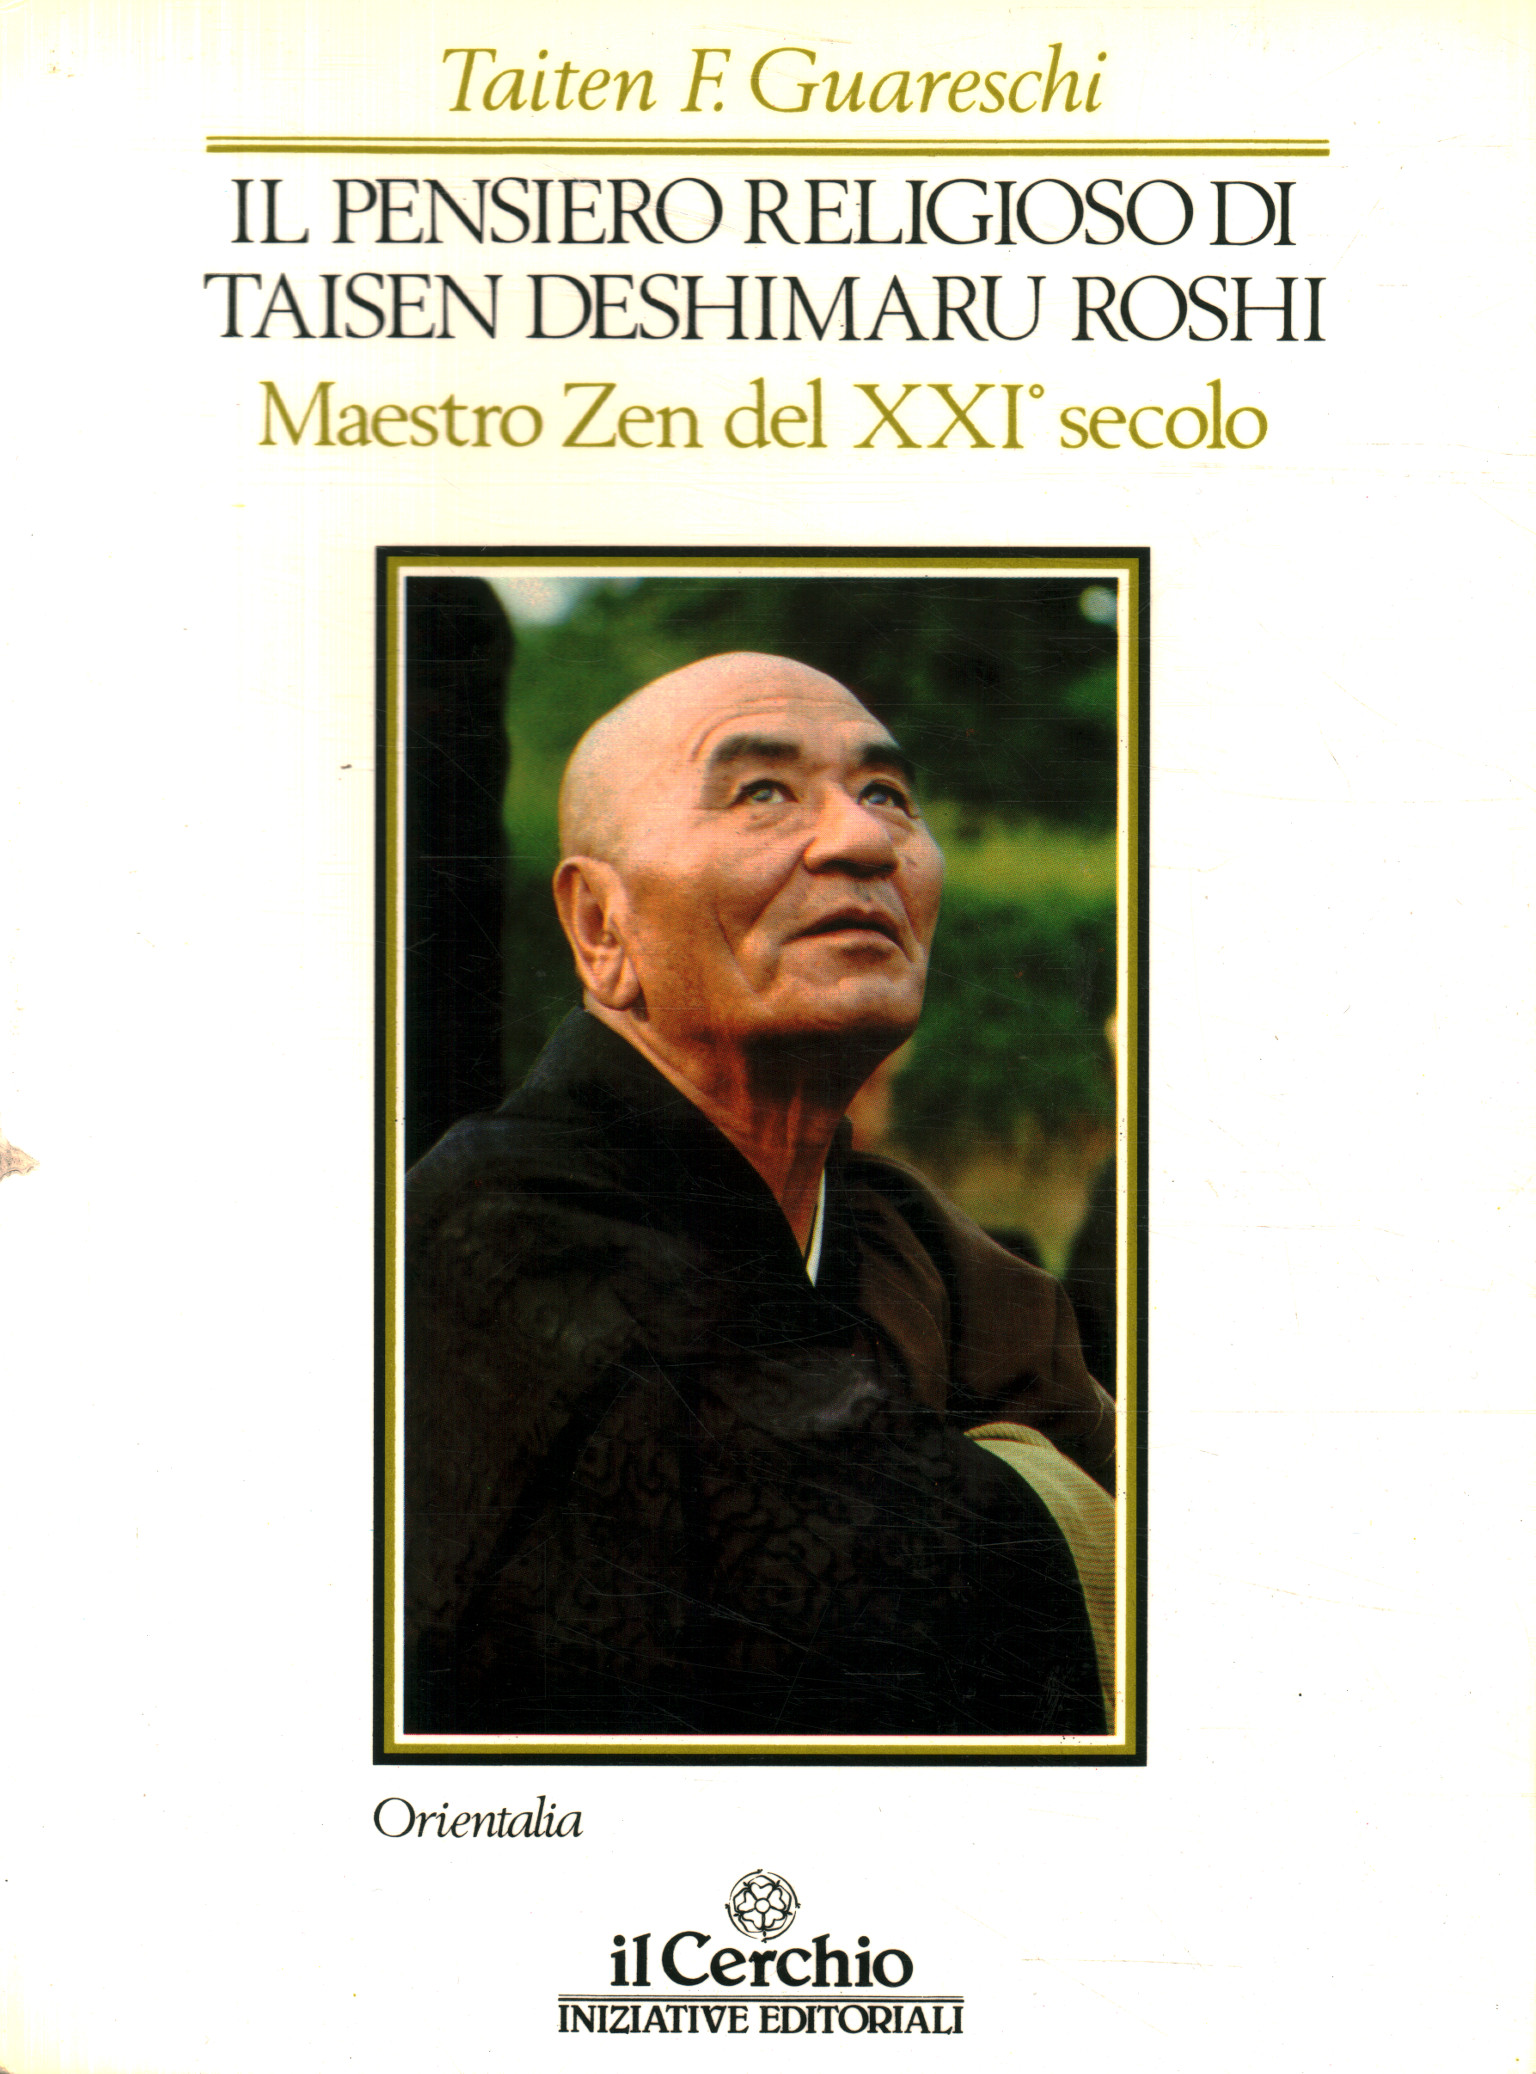 Der religiöse Gedanke von Taisen Deshimar